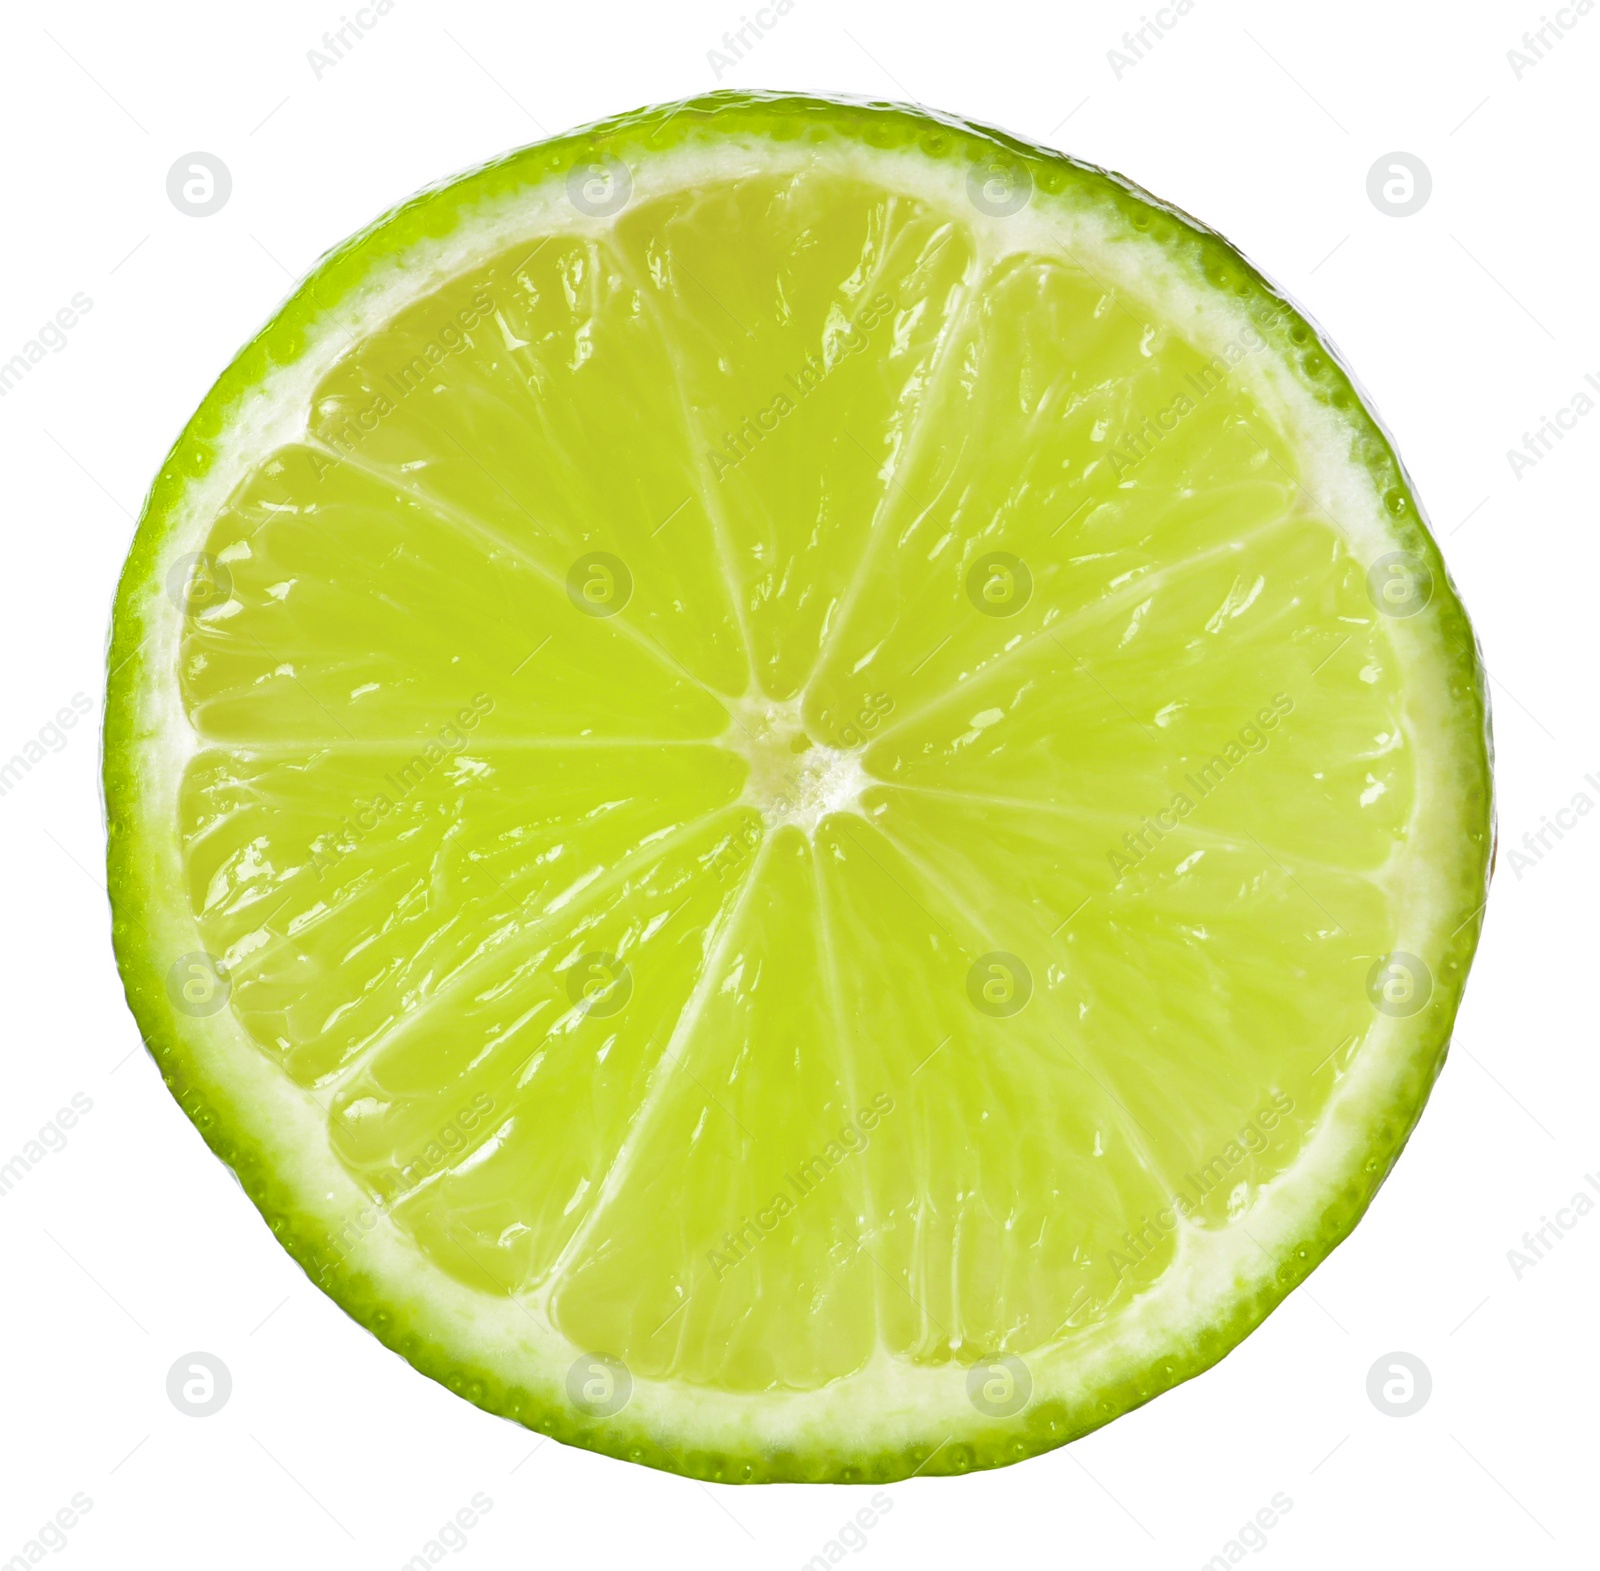 Photo of Citrus fruit. Slice of fresh lime isolated on white